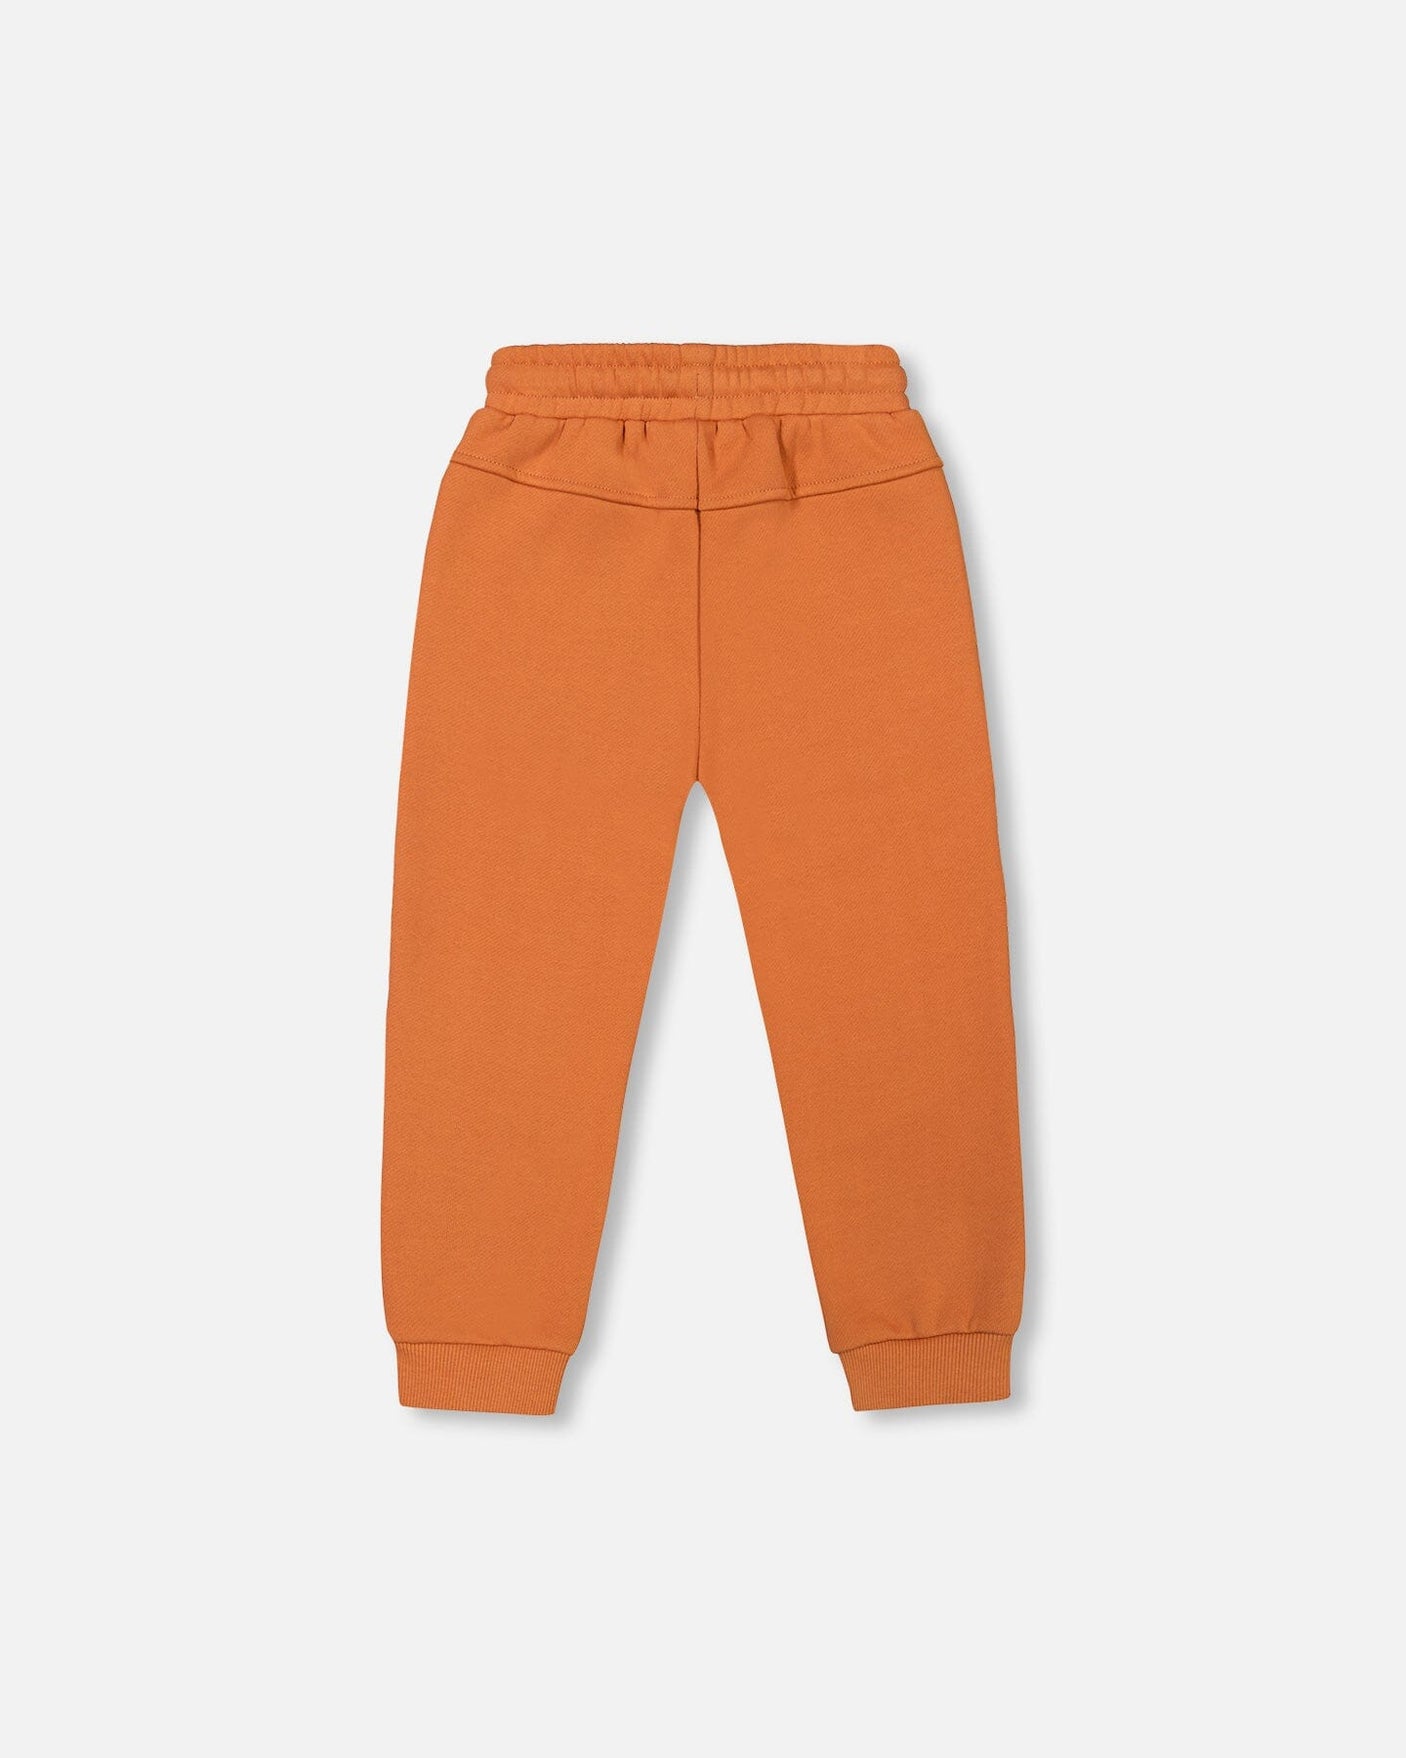 Fleece Sweatpants With Zipper Pockets Brown-Orange-2